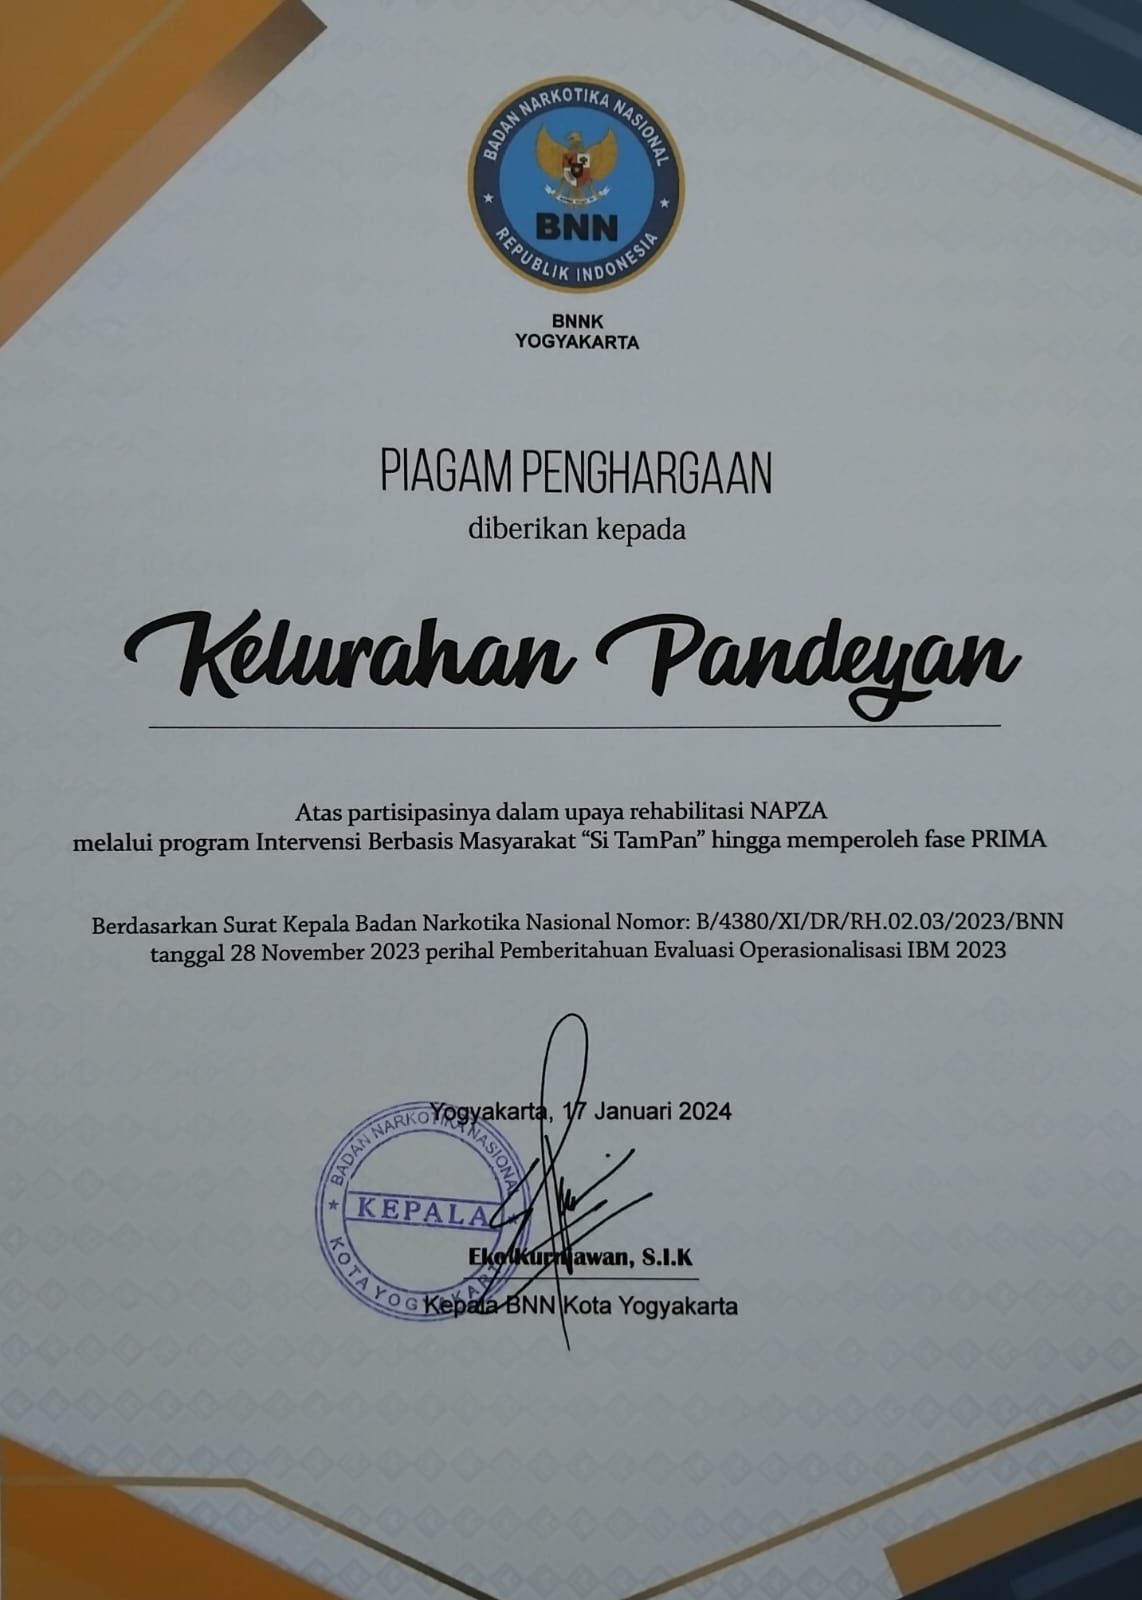 Piagam Penghargaan Kelurahan Pandeyan dari BNNK YOGYAKARTA